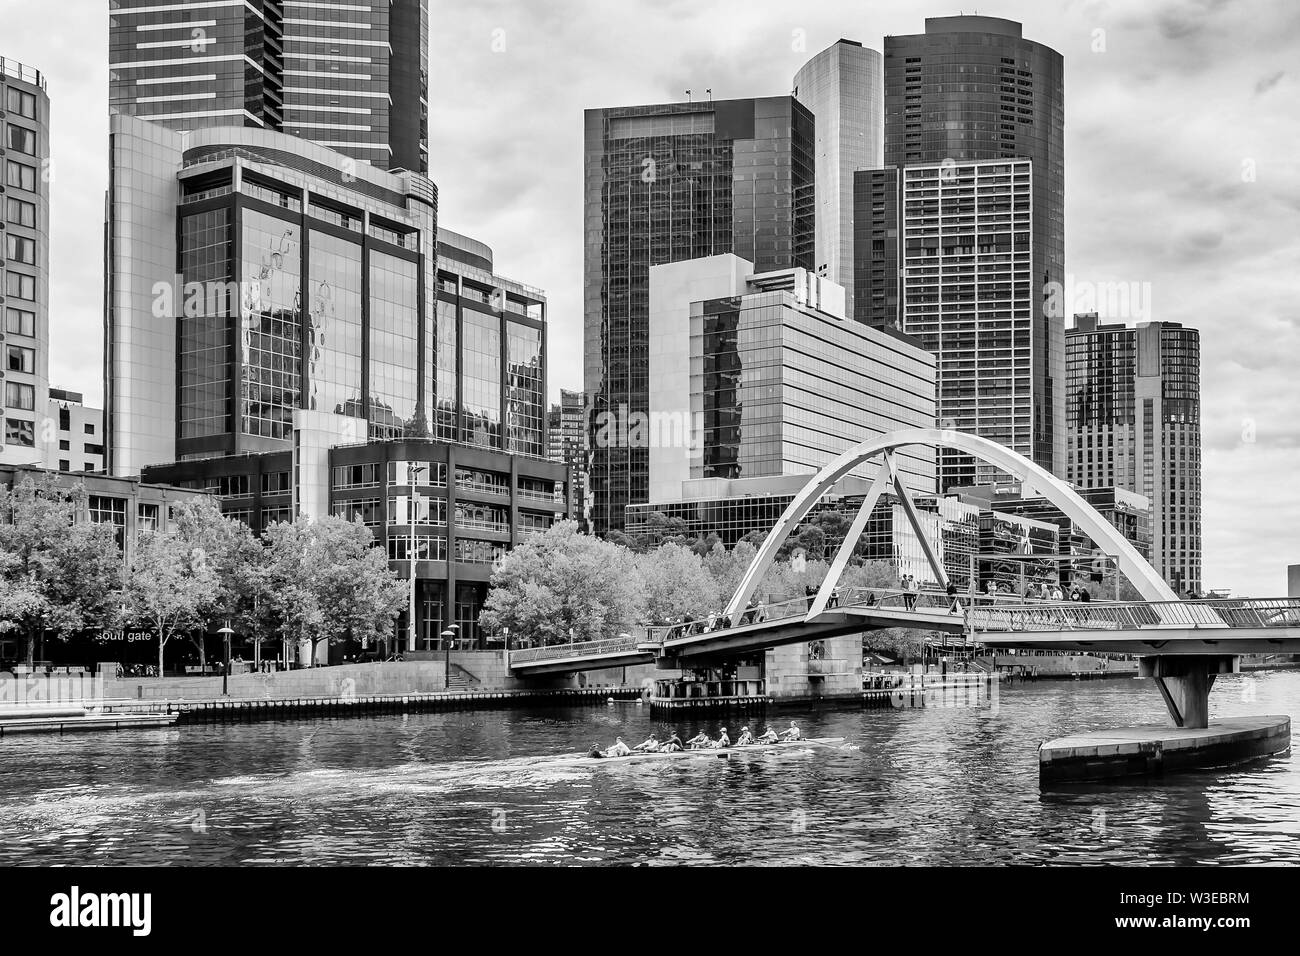 Belle vue en noir et blanc de la rivière Yarra, alors qu'une équipe d'athlètes l'aviron dans le centre de Melbourne, Australie Banque D'Images